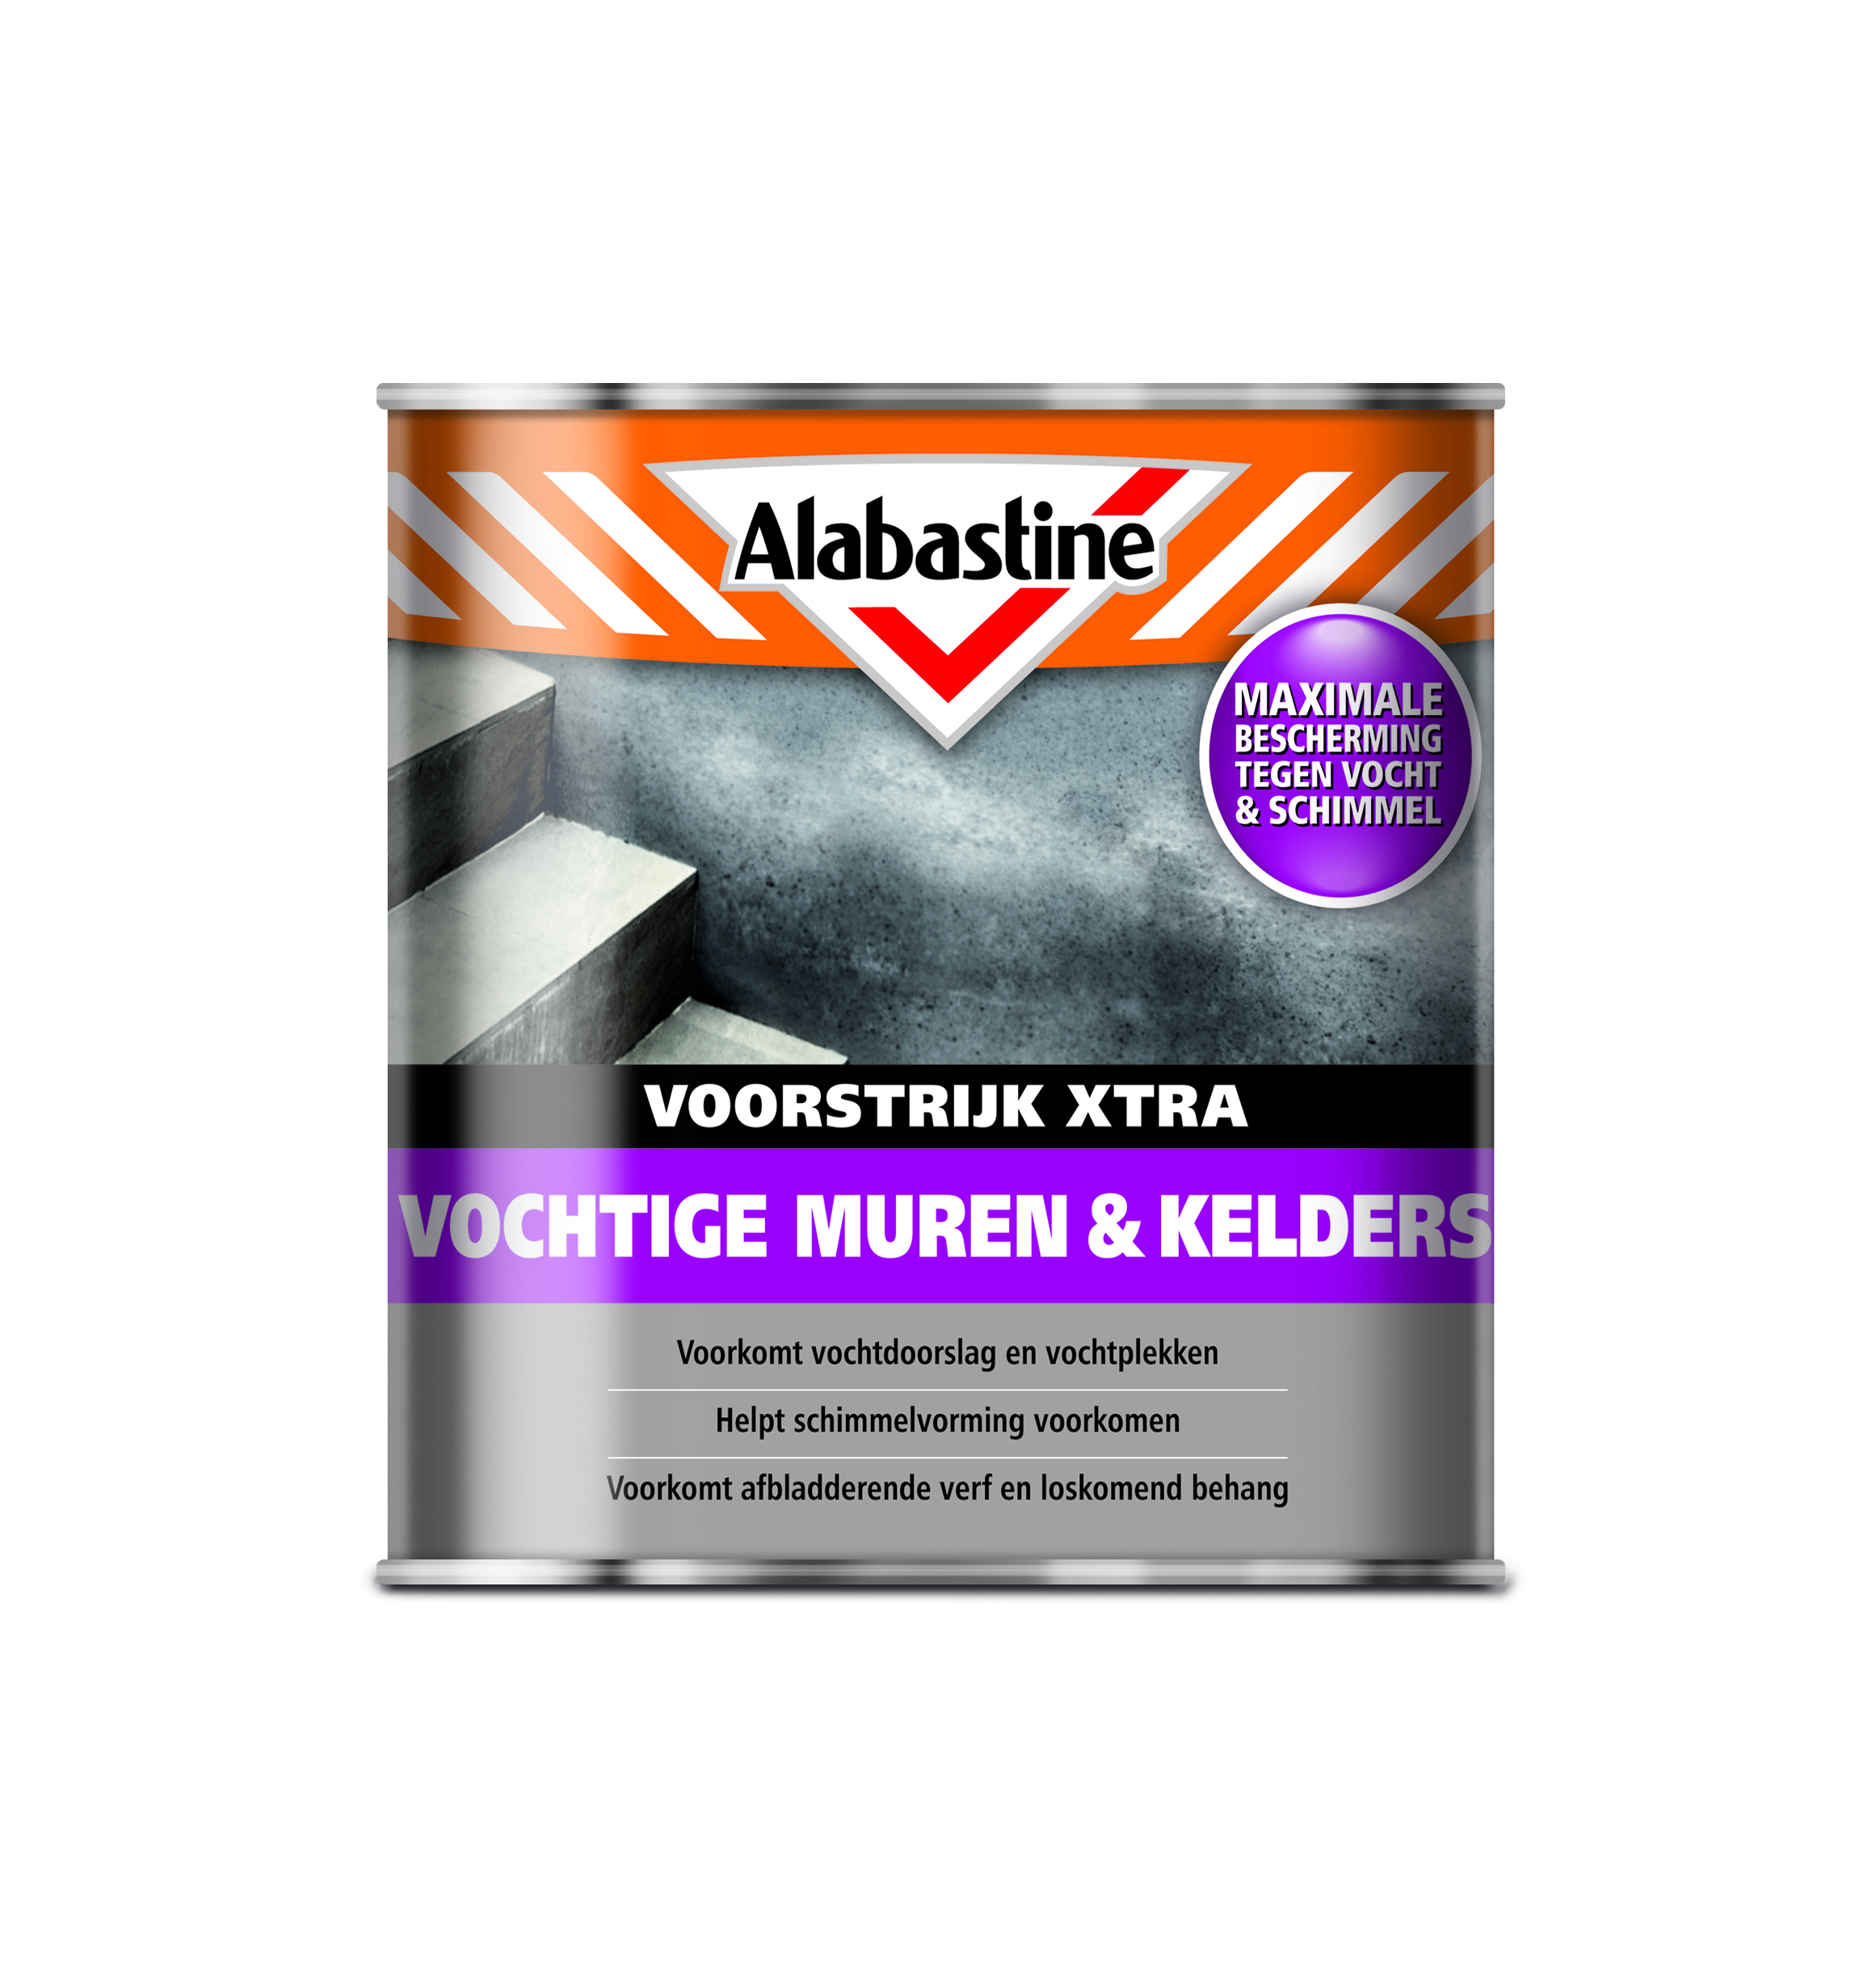 Alabastine Voorstijk - Voor vochtige muren & kelders - 2 5 liter